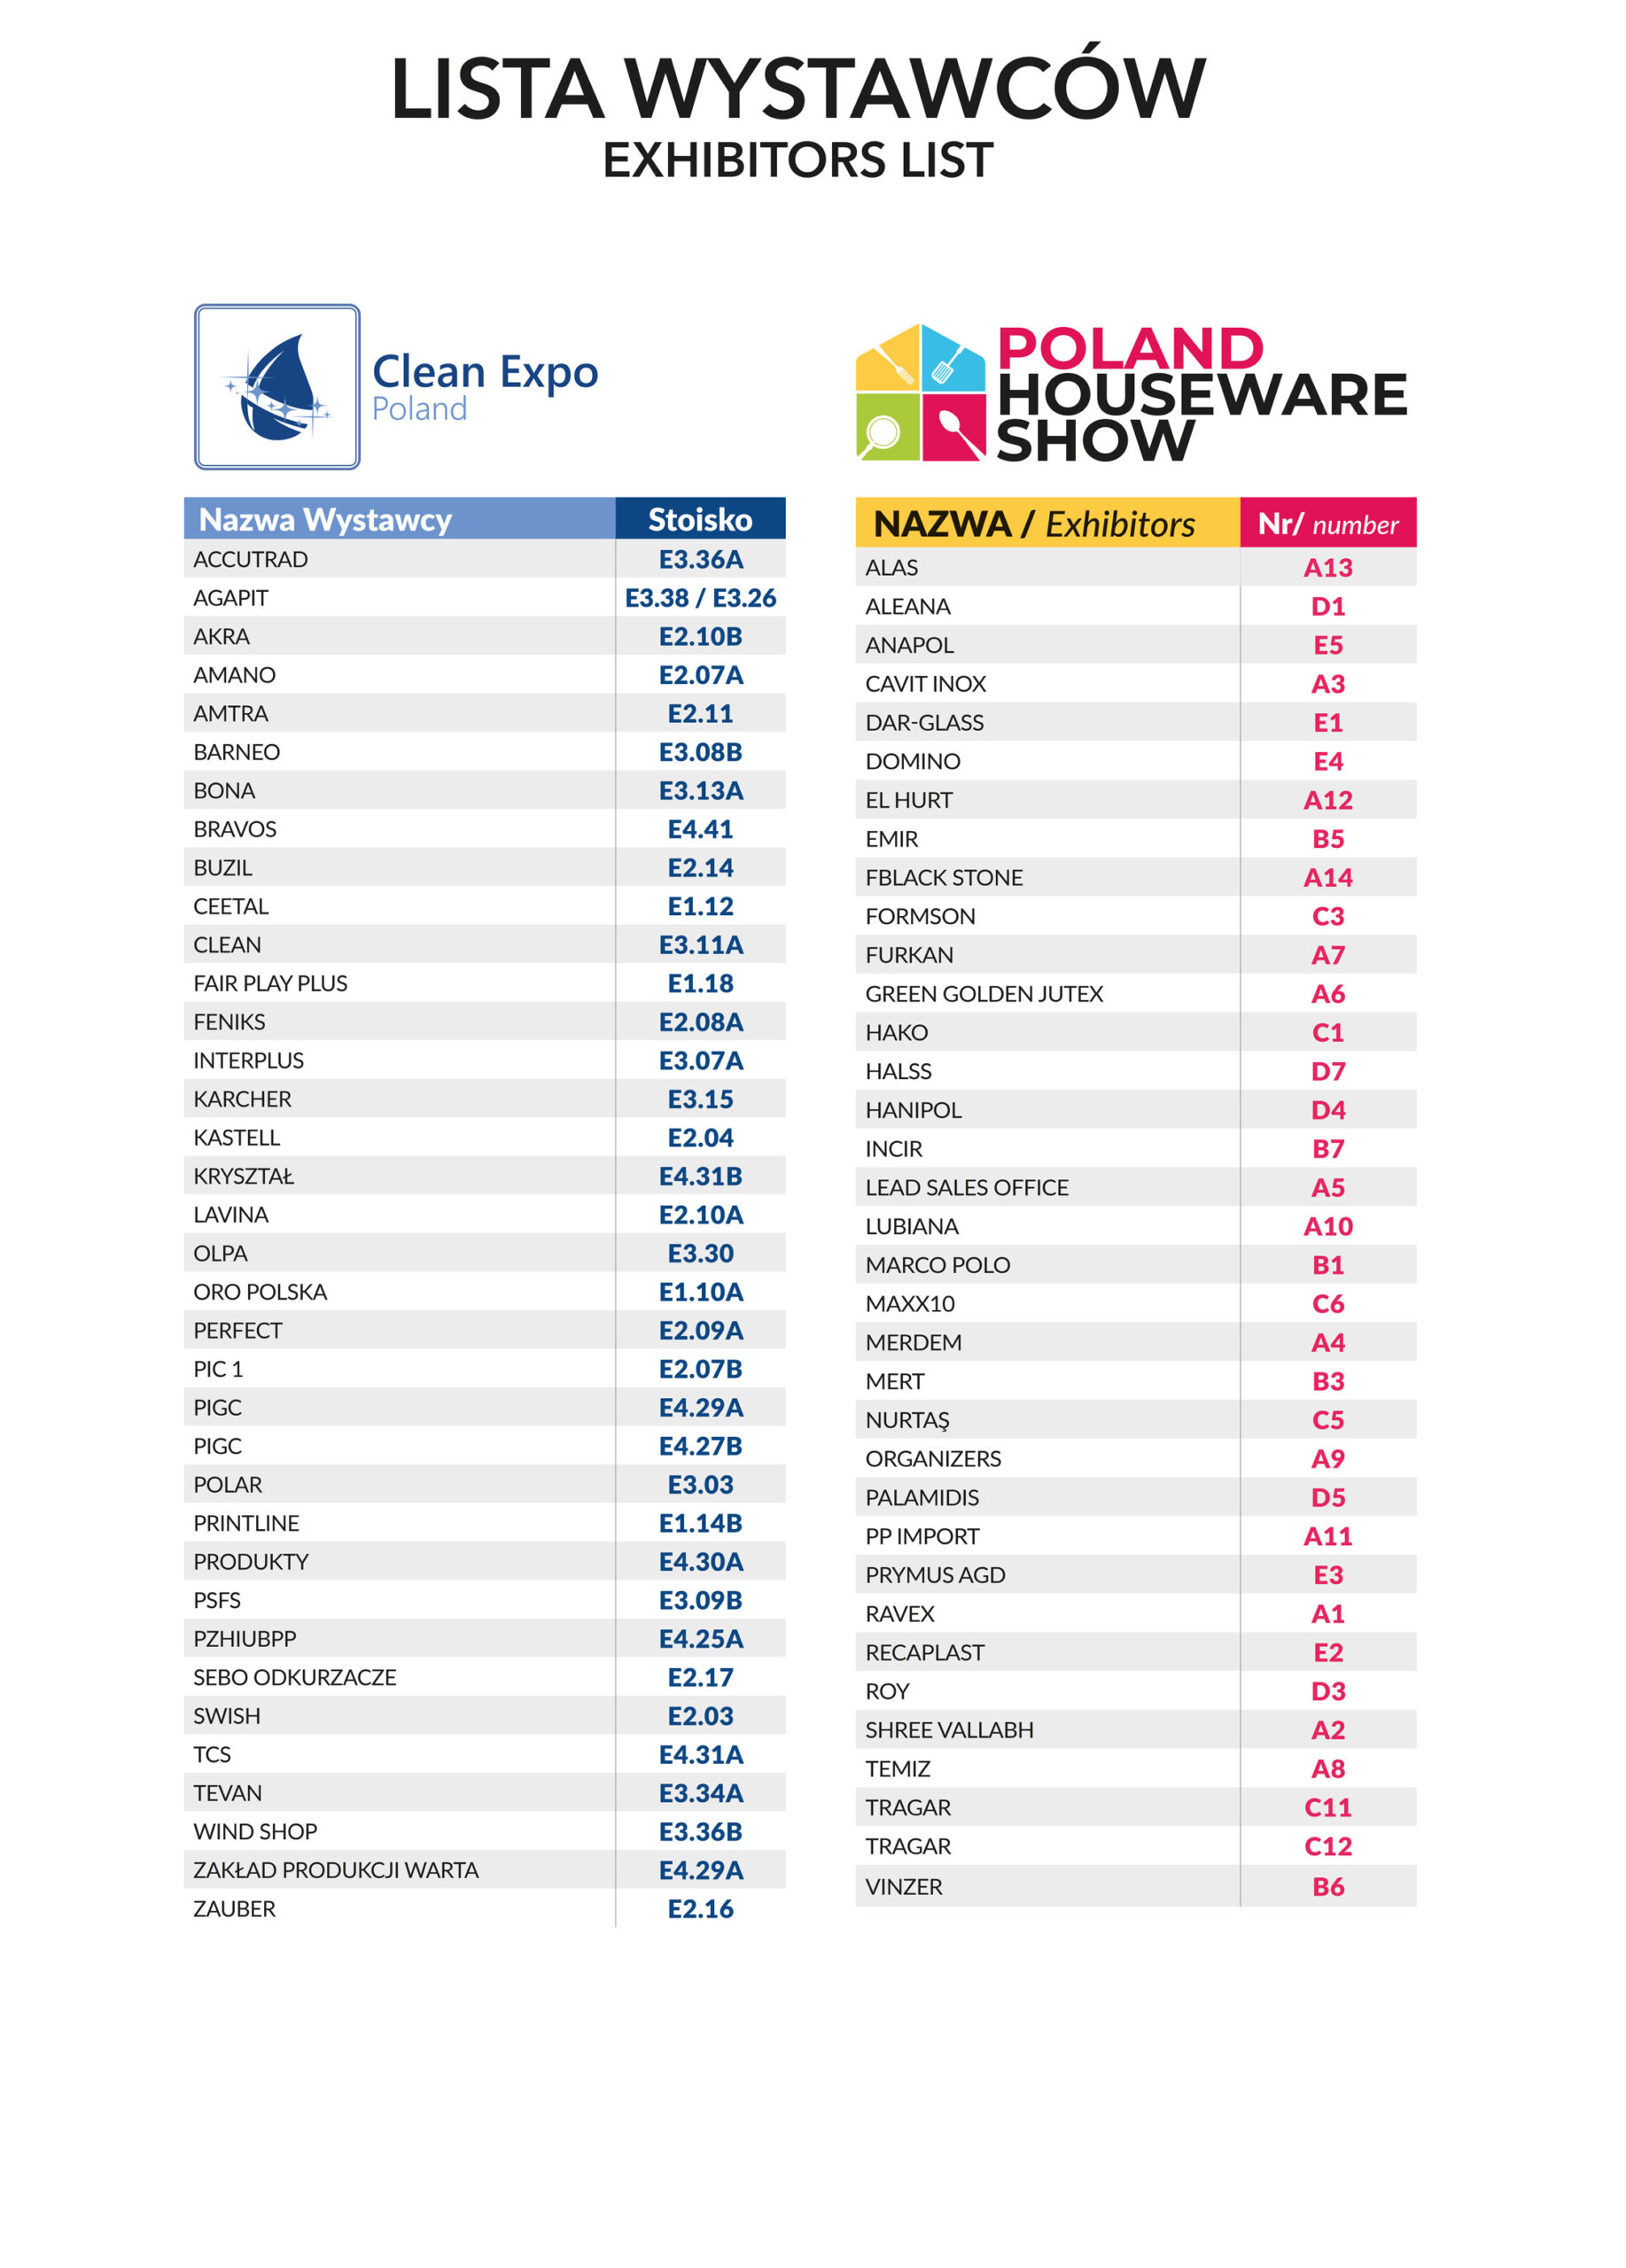 Lista Wystawców Clean Expo i Poland Houseware Show